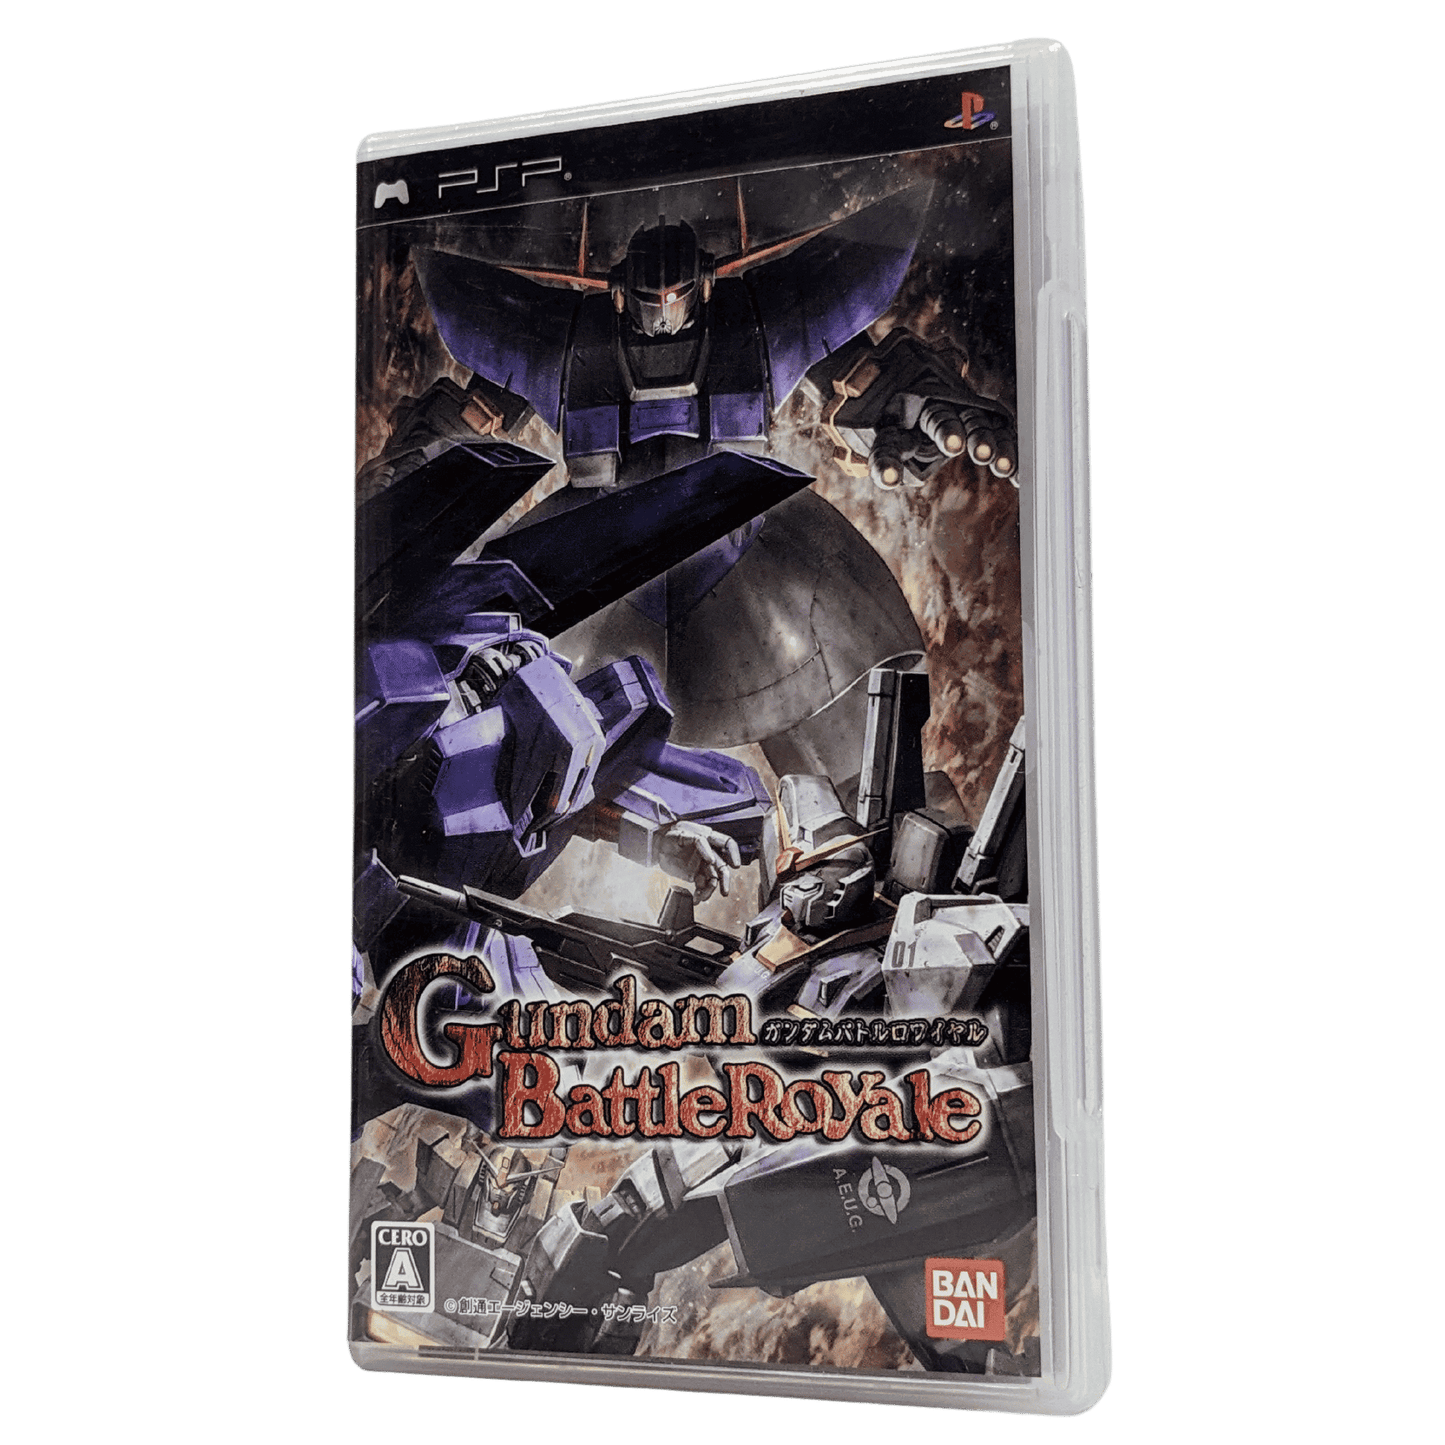 Gundamn: Battle Royal | PSP | Japanese ChitoroShop